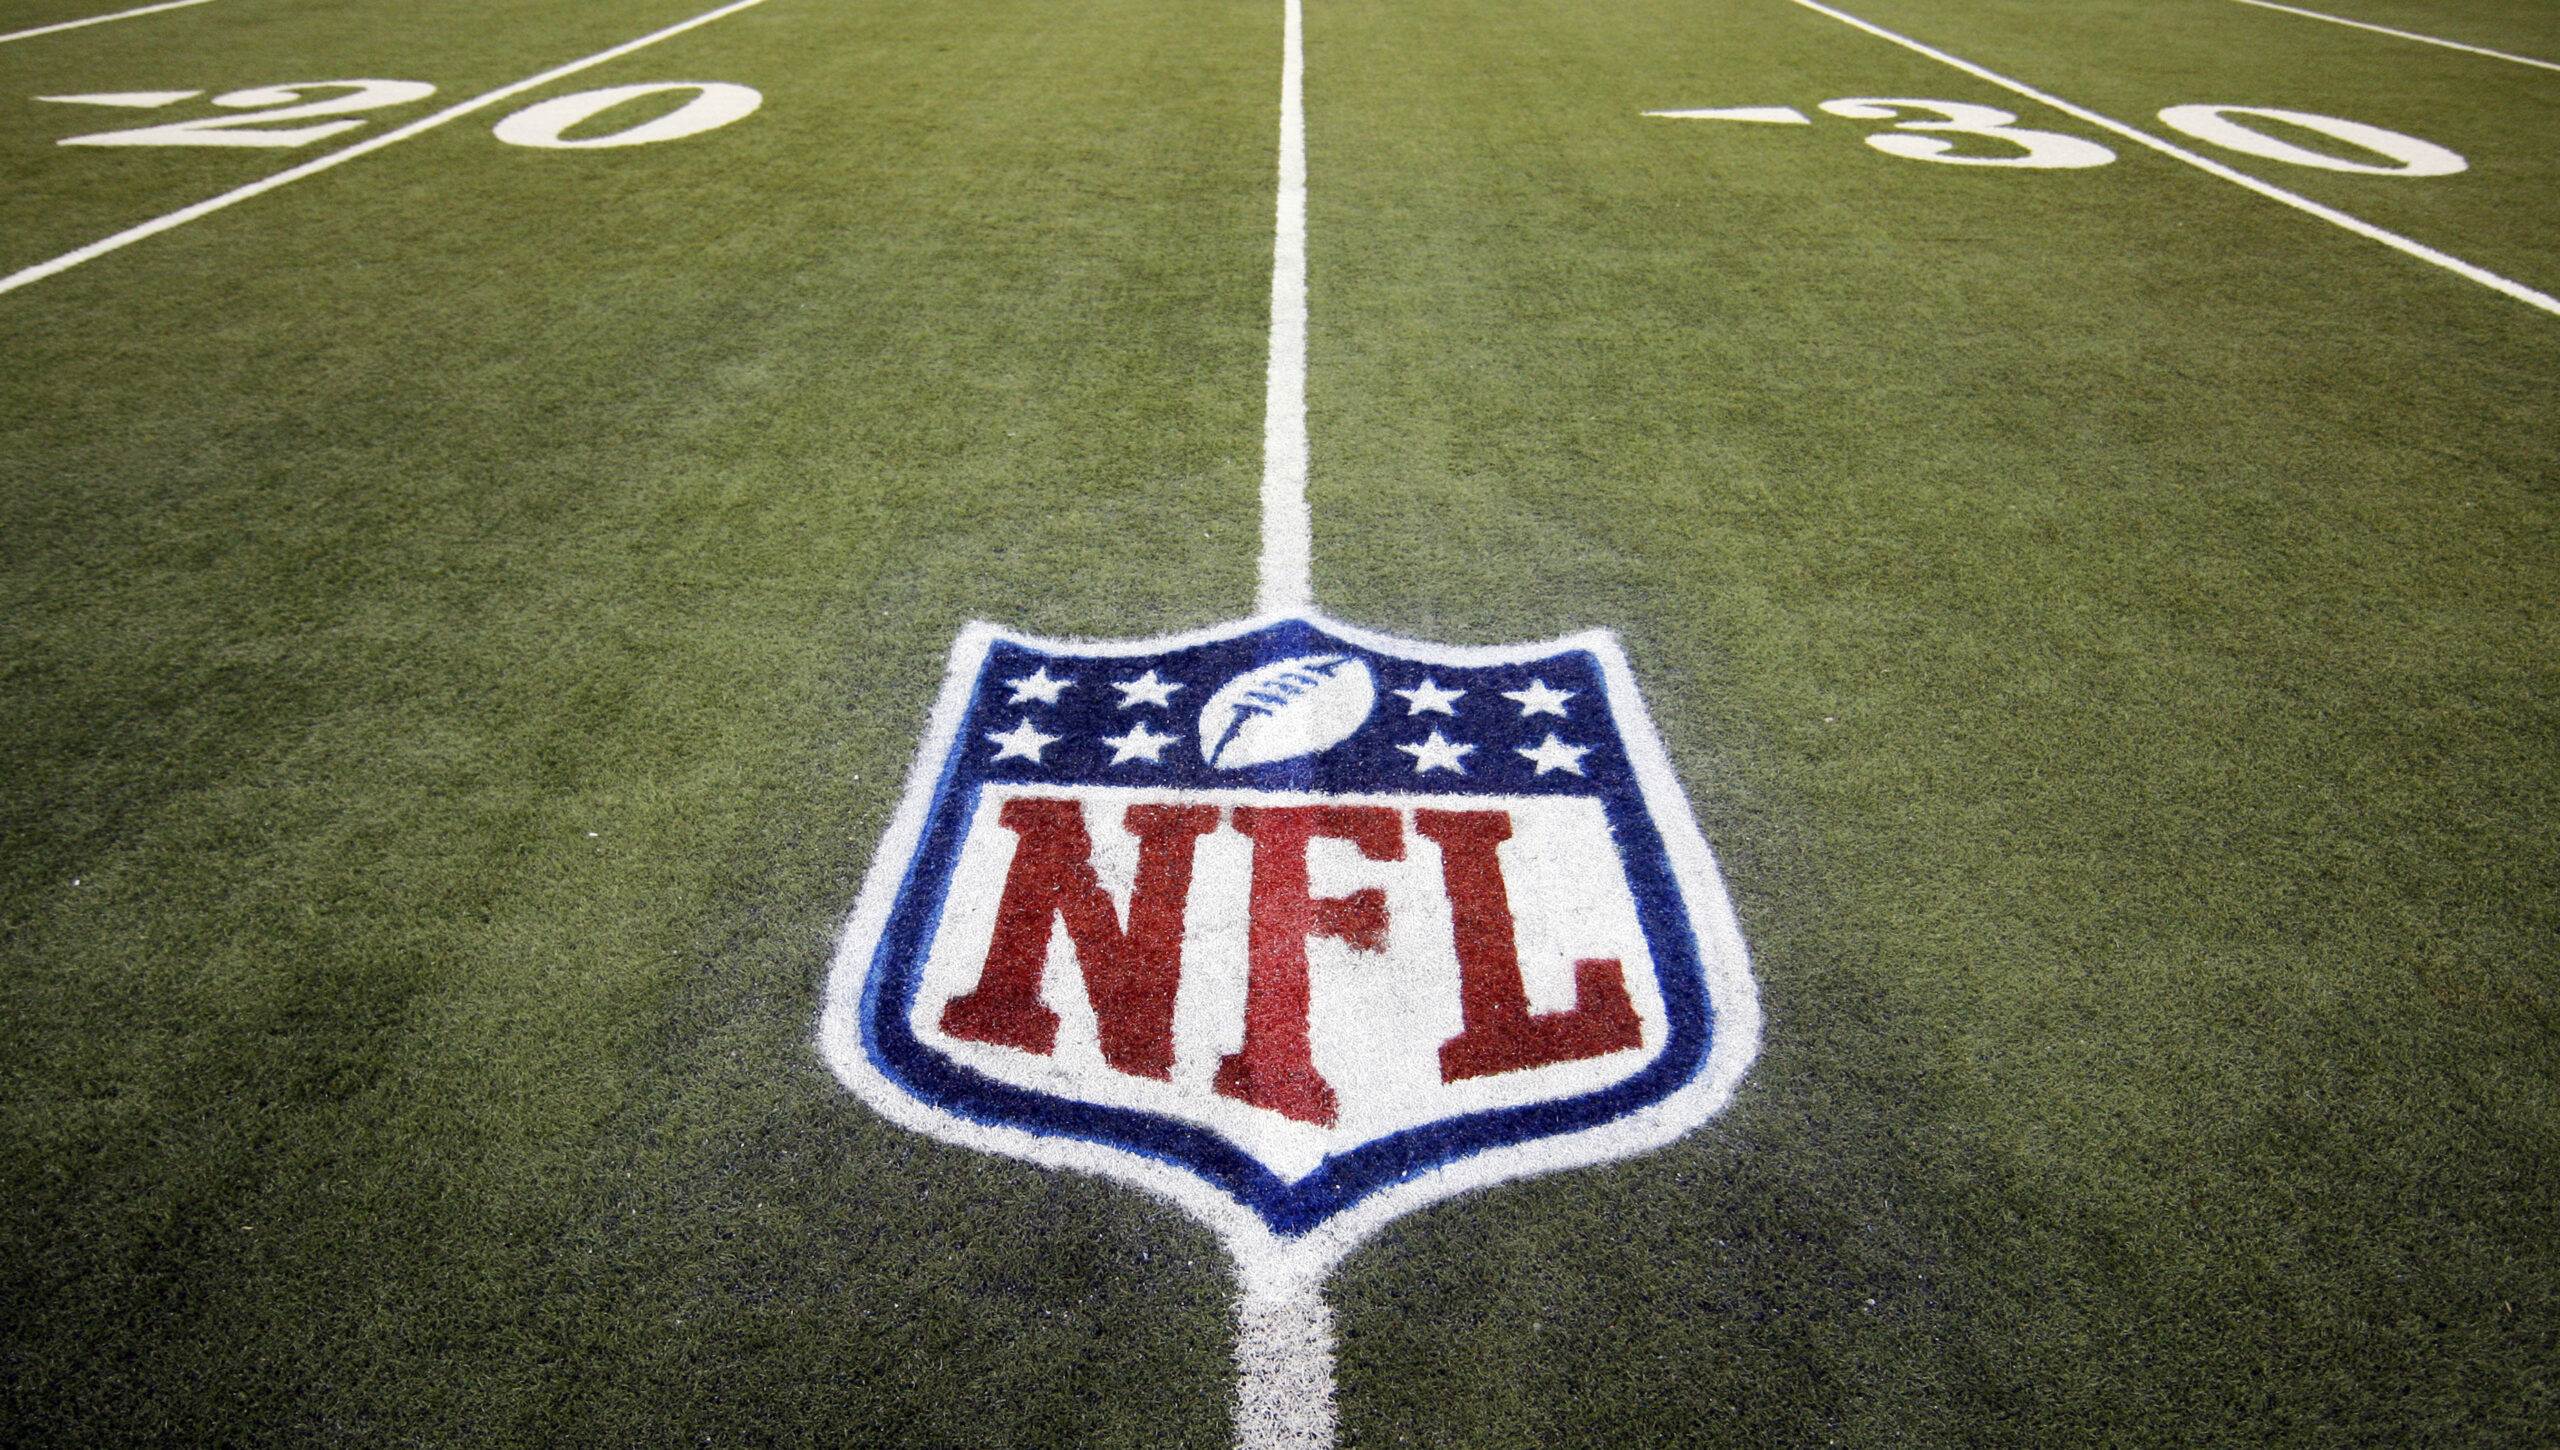 Cowboys Blog - Week 4 NFL Game Picks